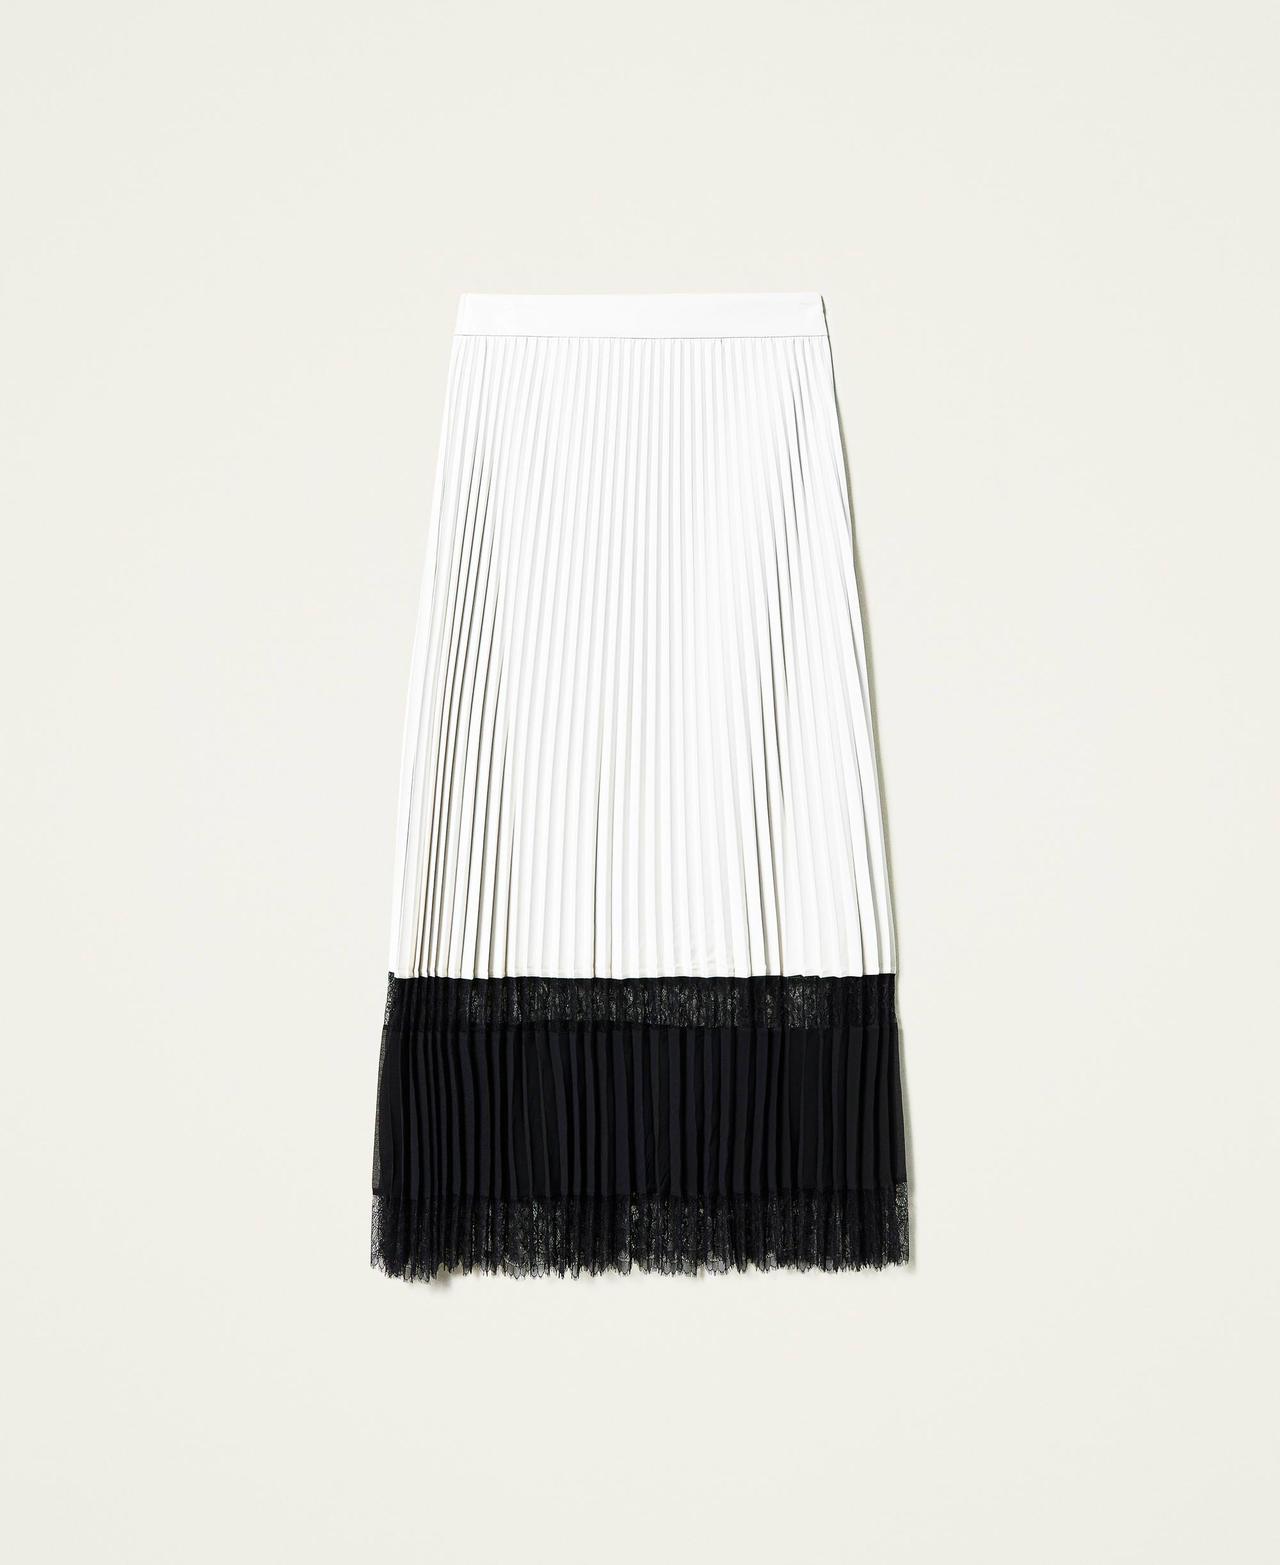 Jupe longue plissée avec dentelle Bicolore Blanc Neige / Noir Femme 212TP2090-0S